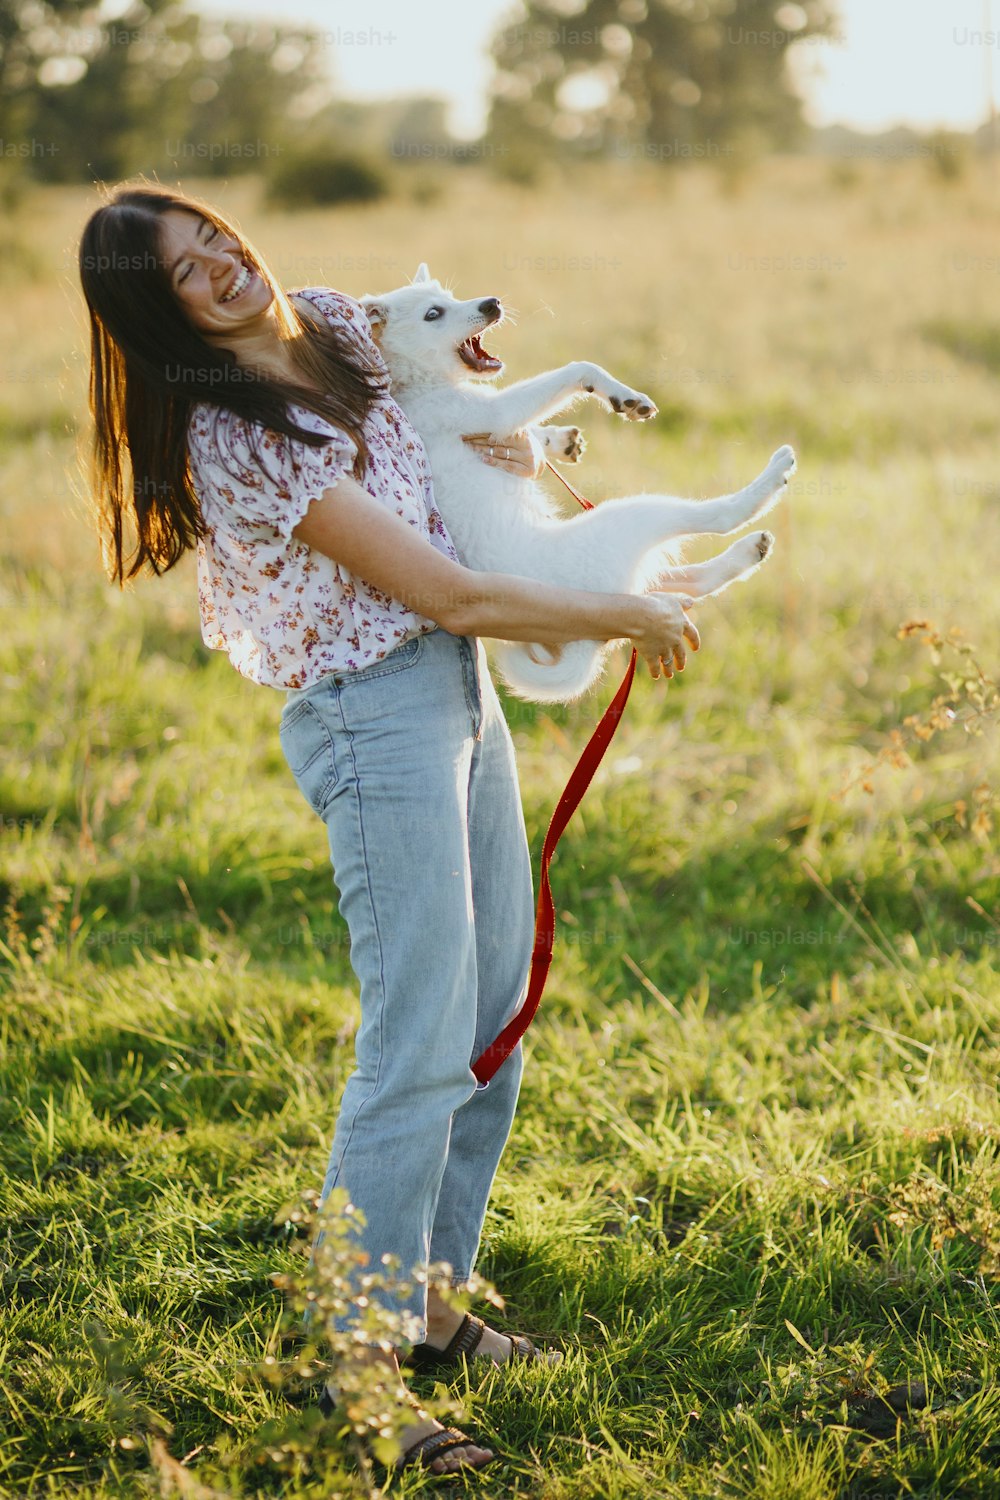 Ragazza che tiene in mano un cucciolo soffice adorabile giocoso, momento esilarante. Giocare con la pecorina. Giovane donna felice che tiene un cucciolo bianco divertente nella calda luce del tramonto nel prato estivo.